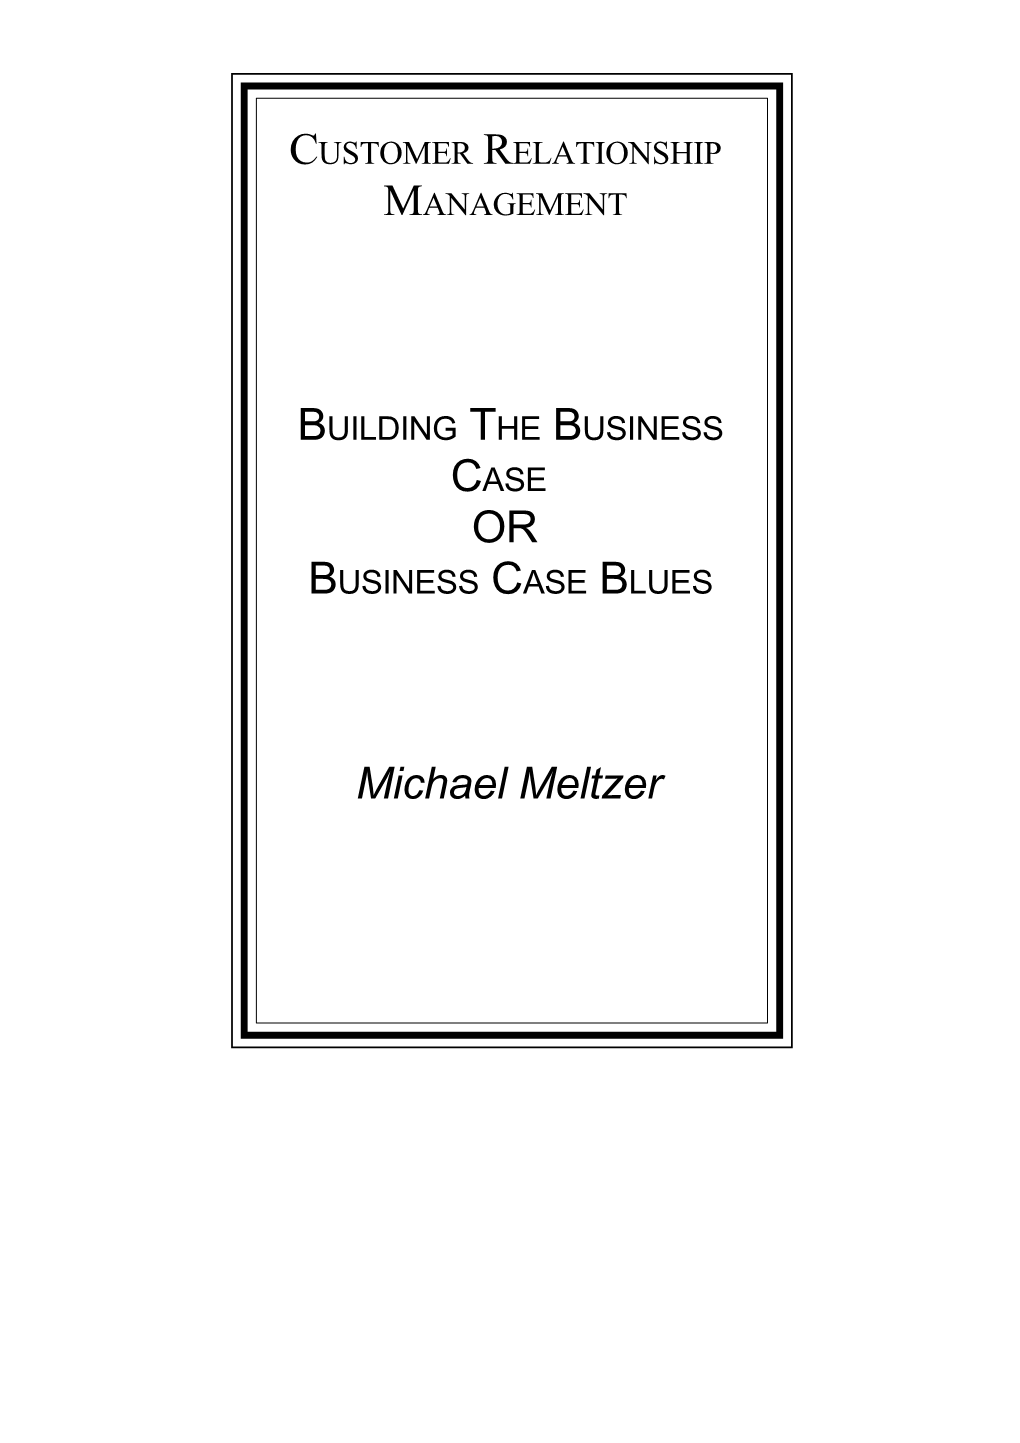 Business Case Blues